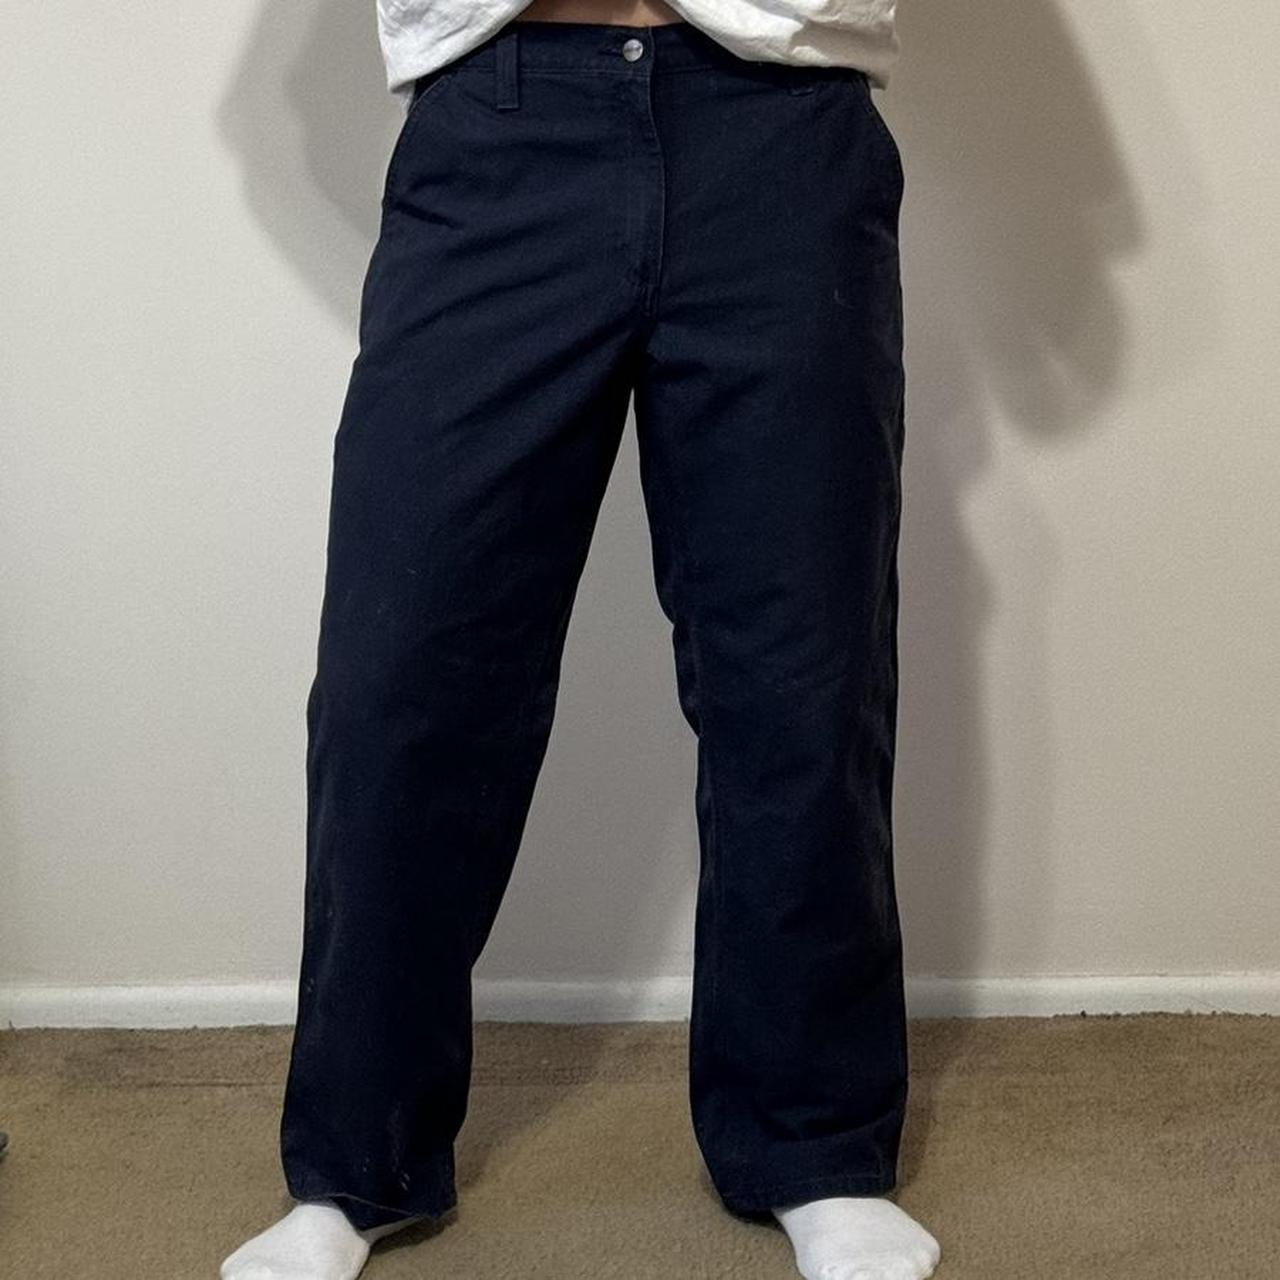 men’s navy blue carhartt carpenter pants size... - Depop